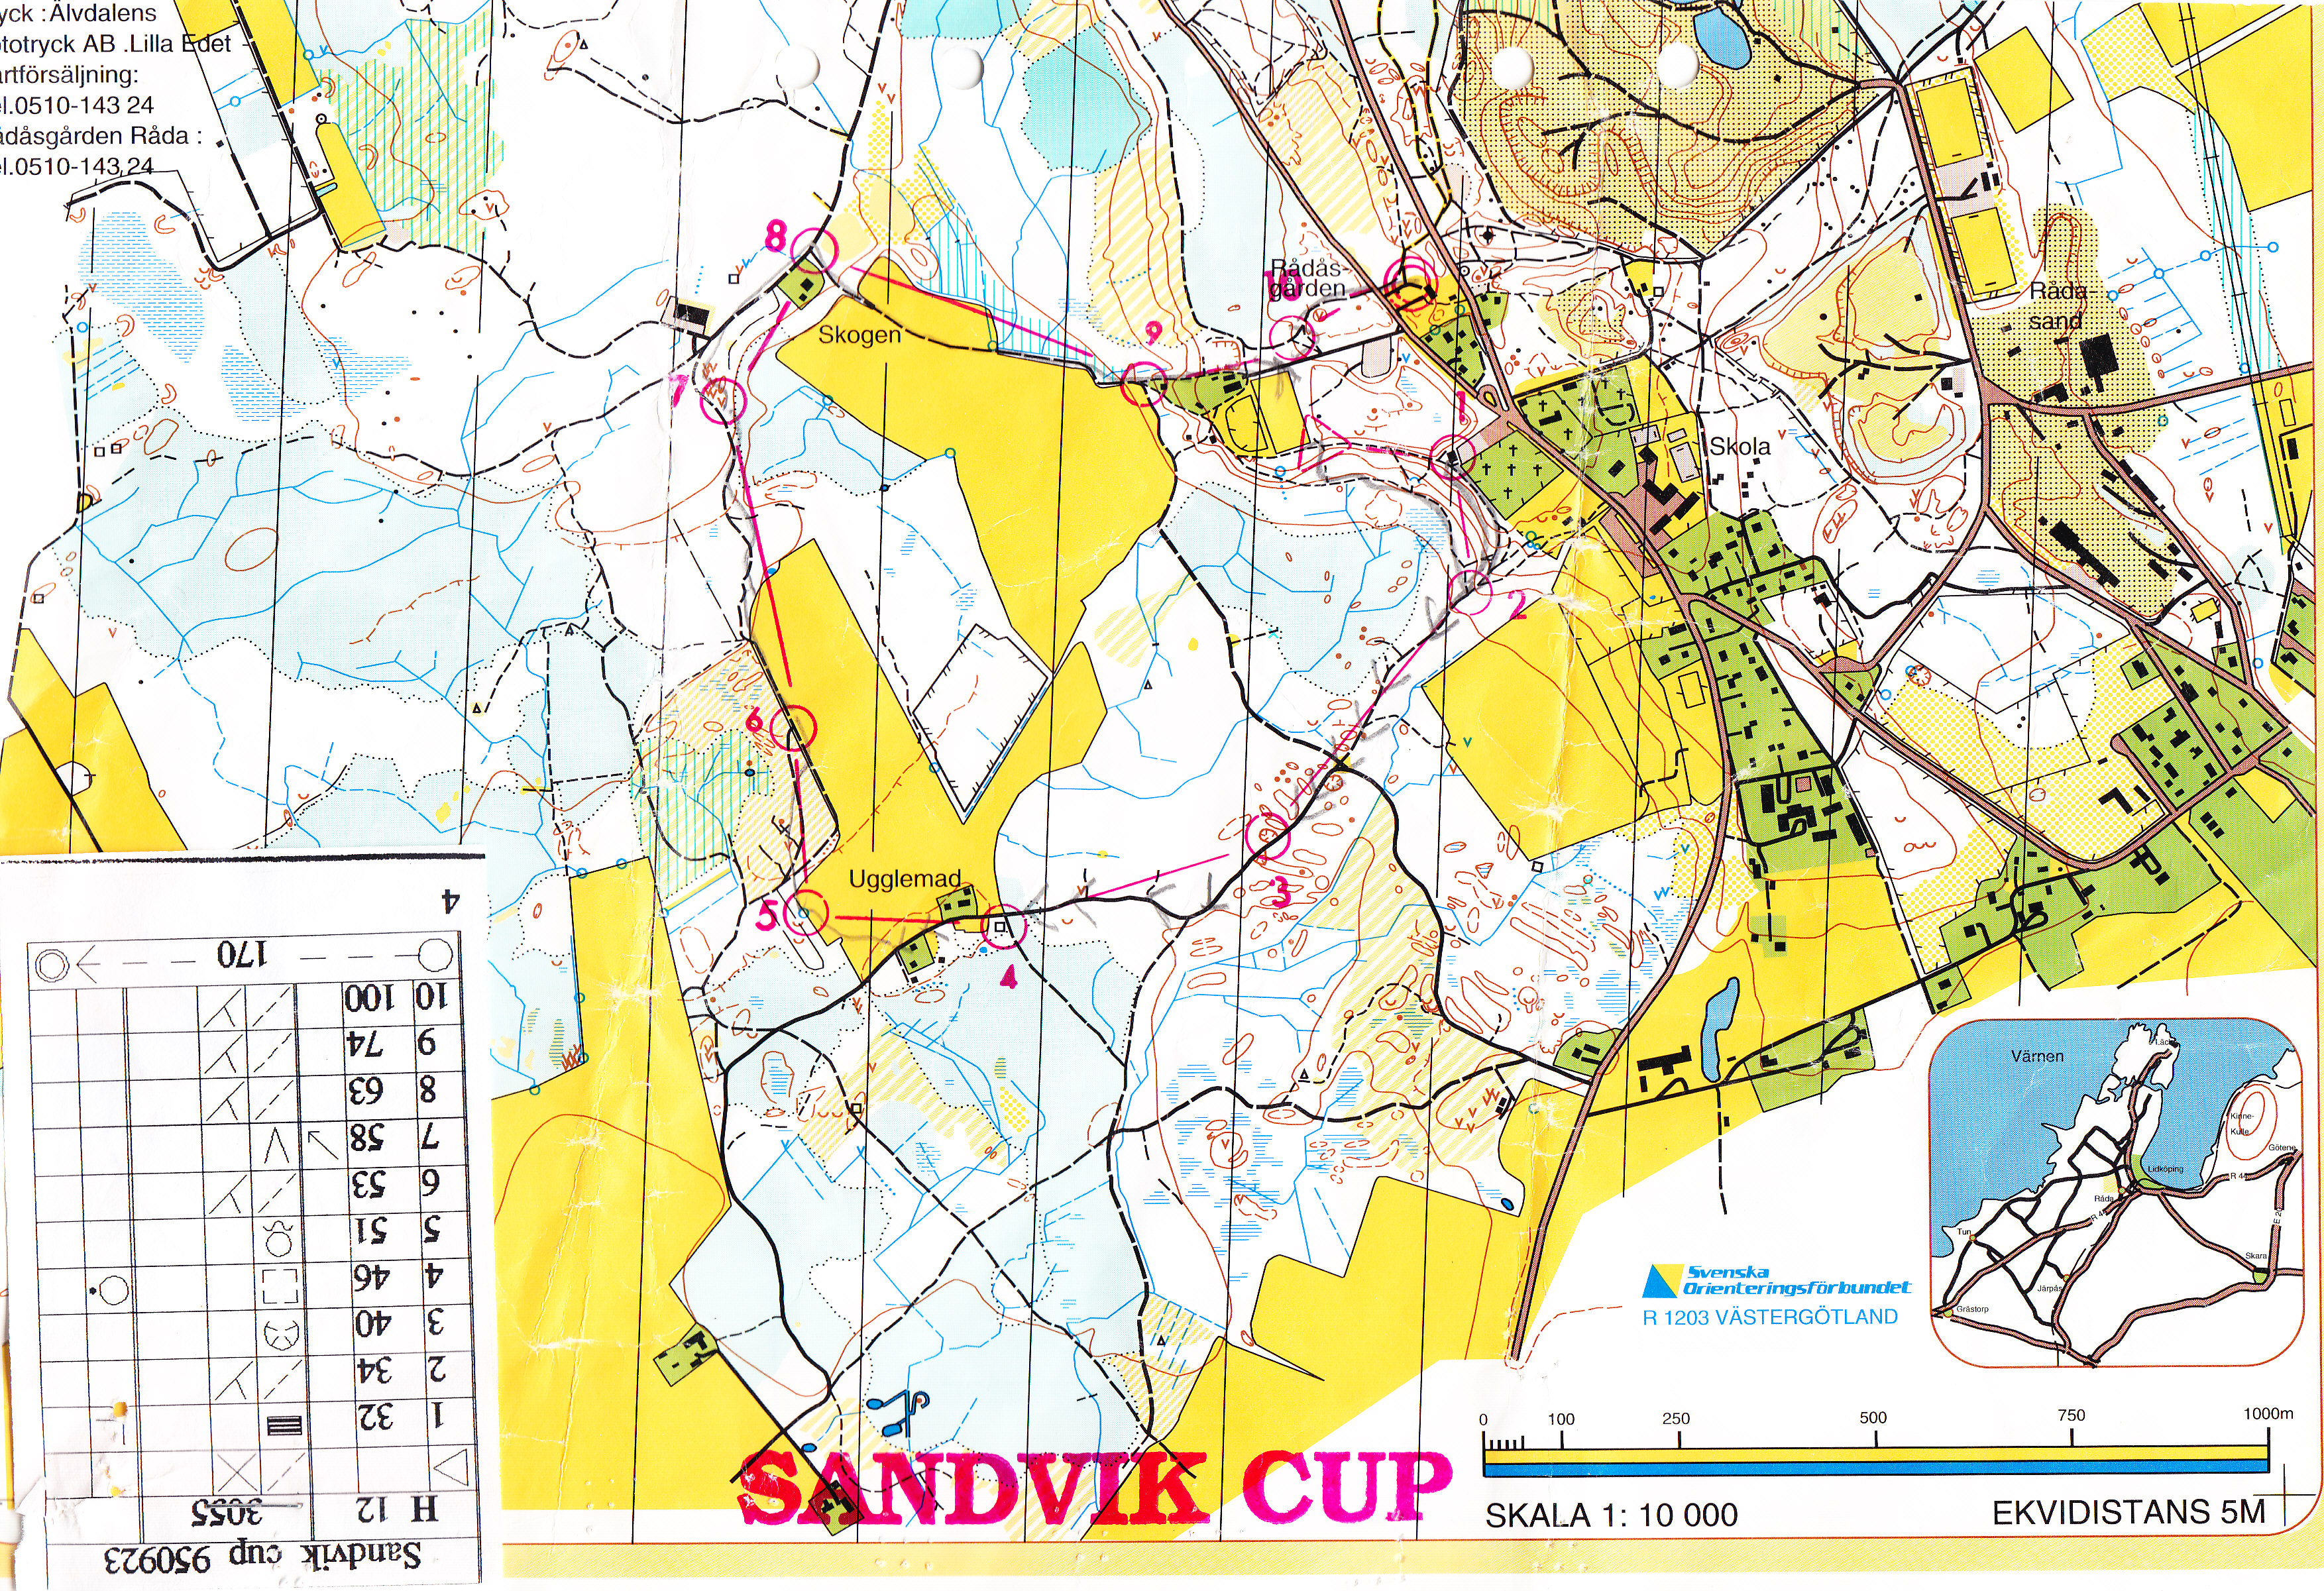 Sandvik Cup (23.09.1995)